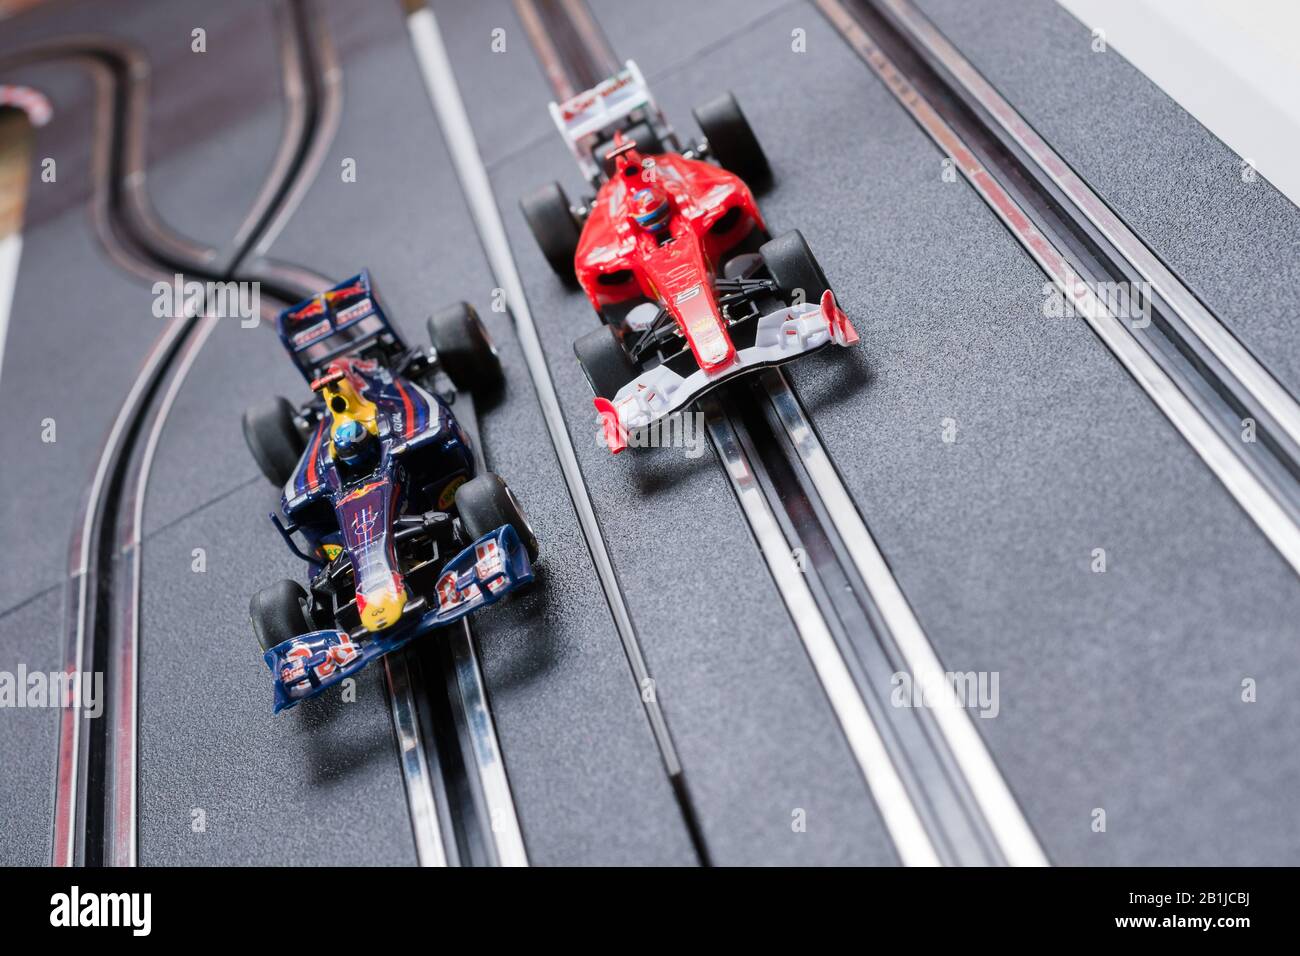 Modell Formel 1 Redbull und ein Ferrari Style Slot Cars, die auf einer Scalextric-Strecke Rennen Stockfoto